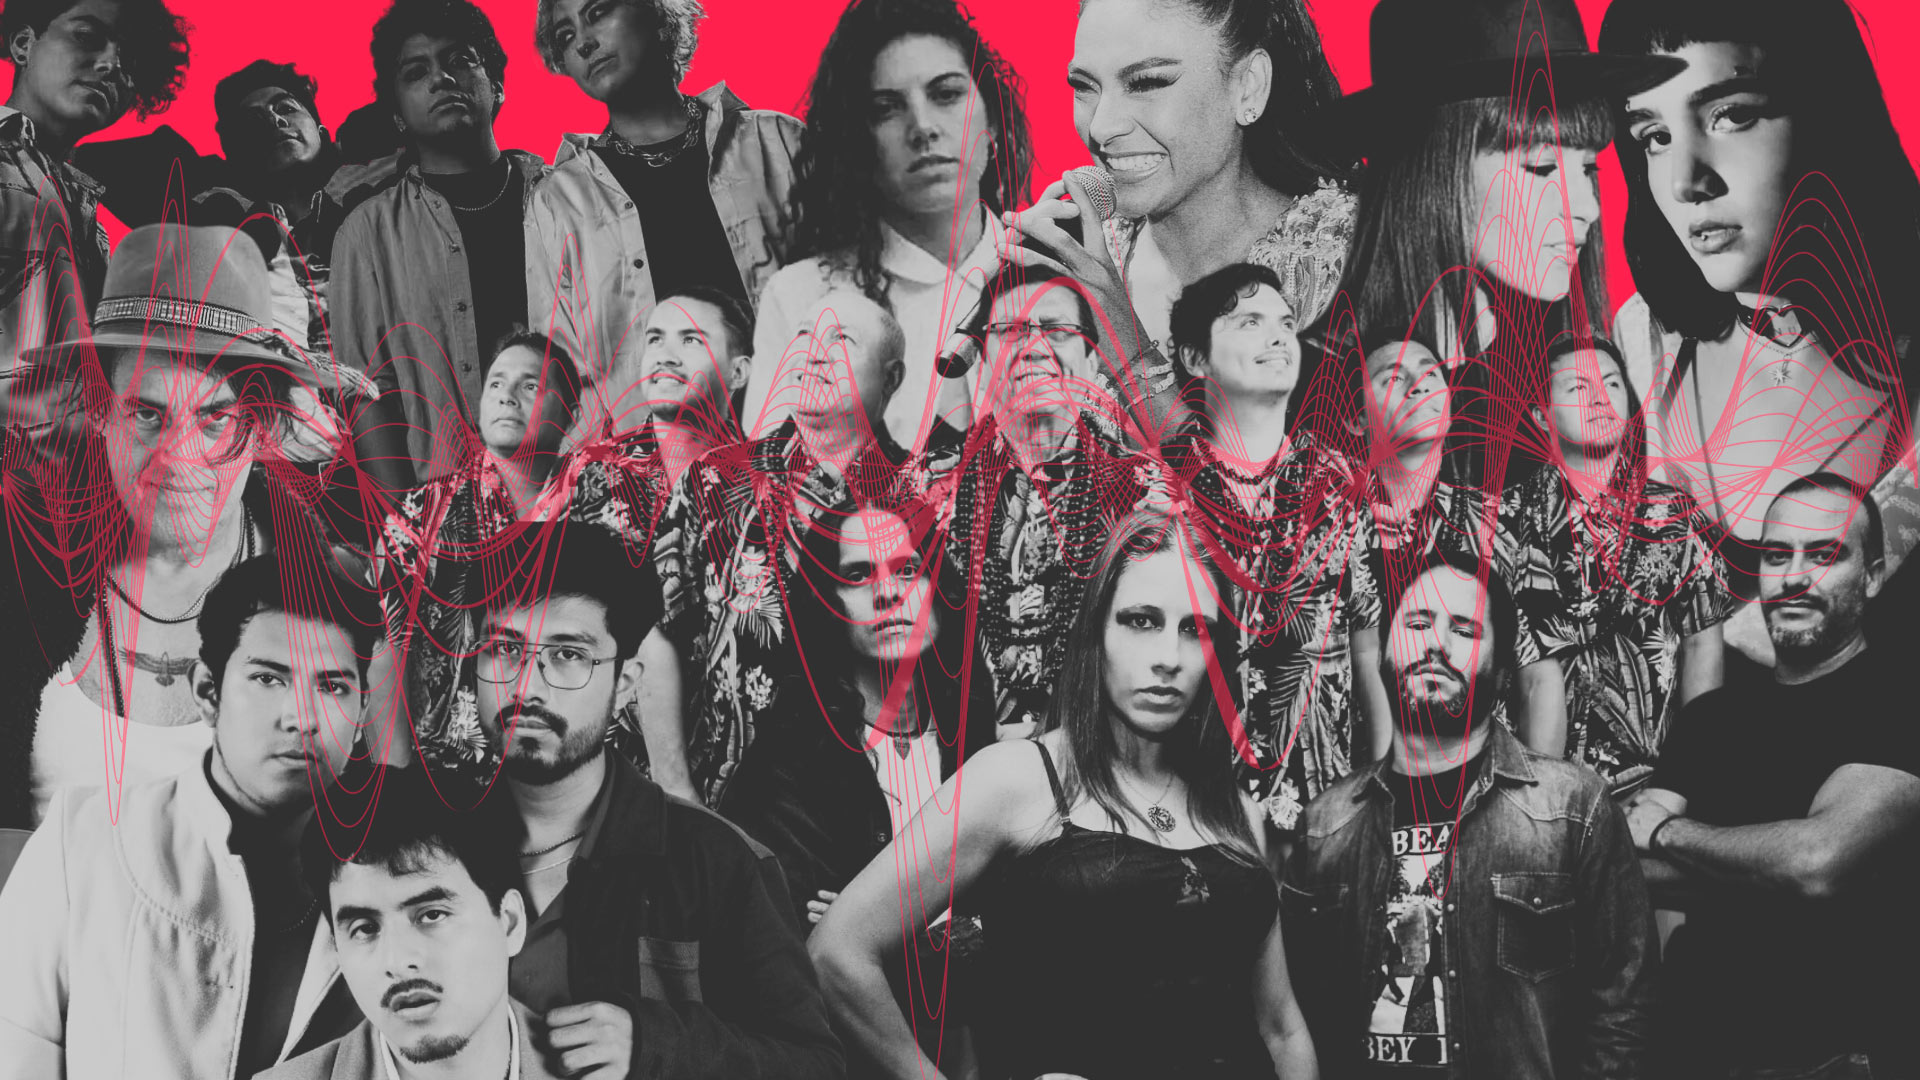 Los Mirlos, Lorena Blume y otros artistas peruanos con nueva música en un collage con fondo rojo